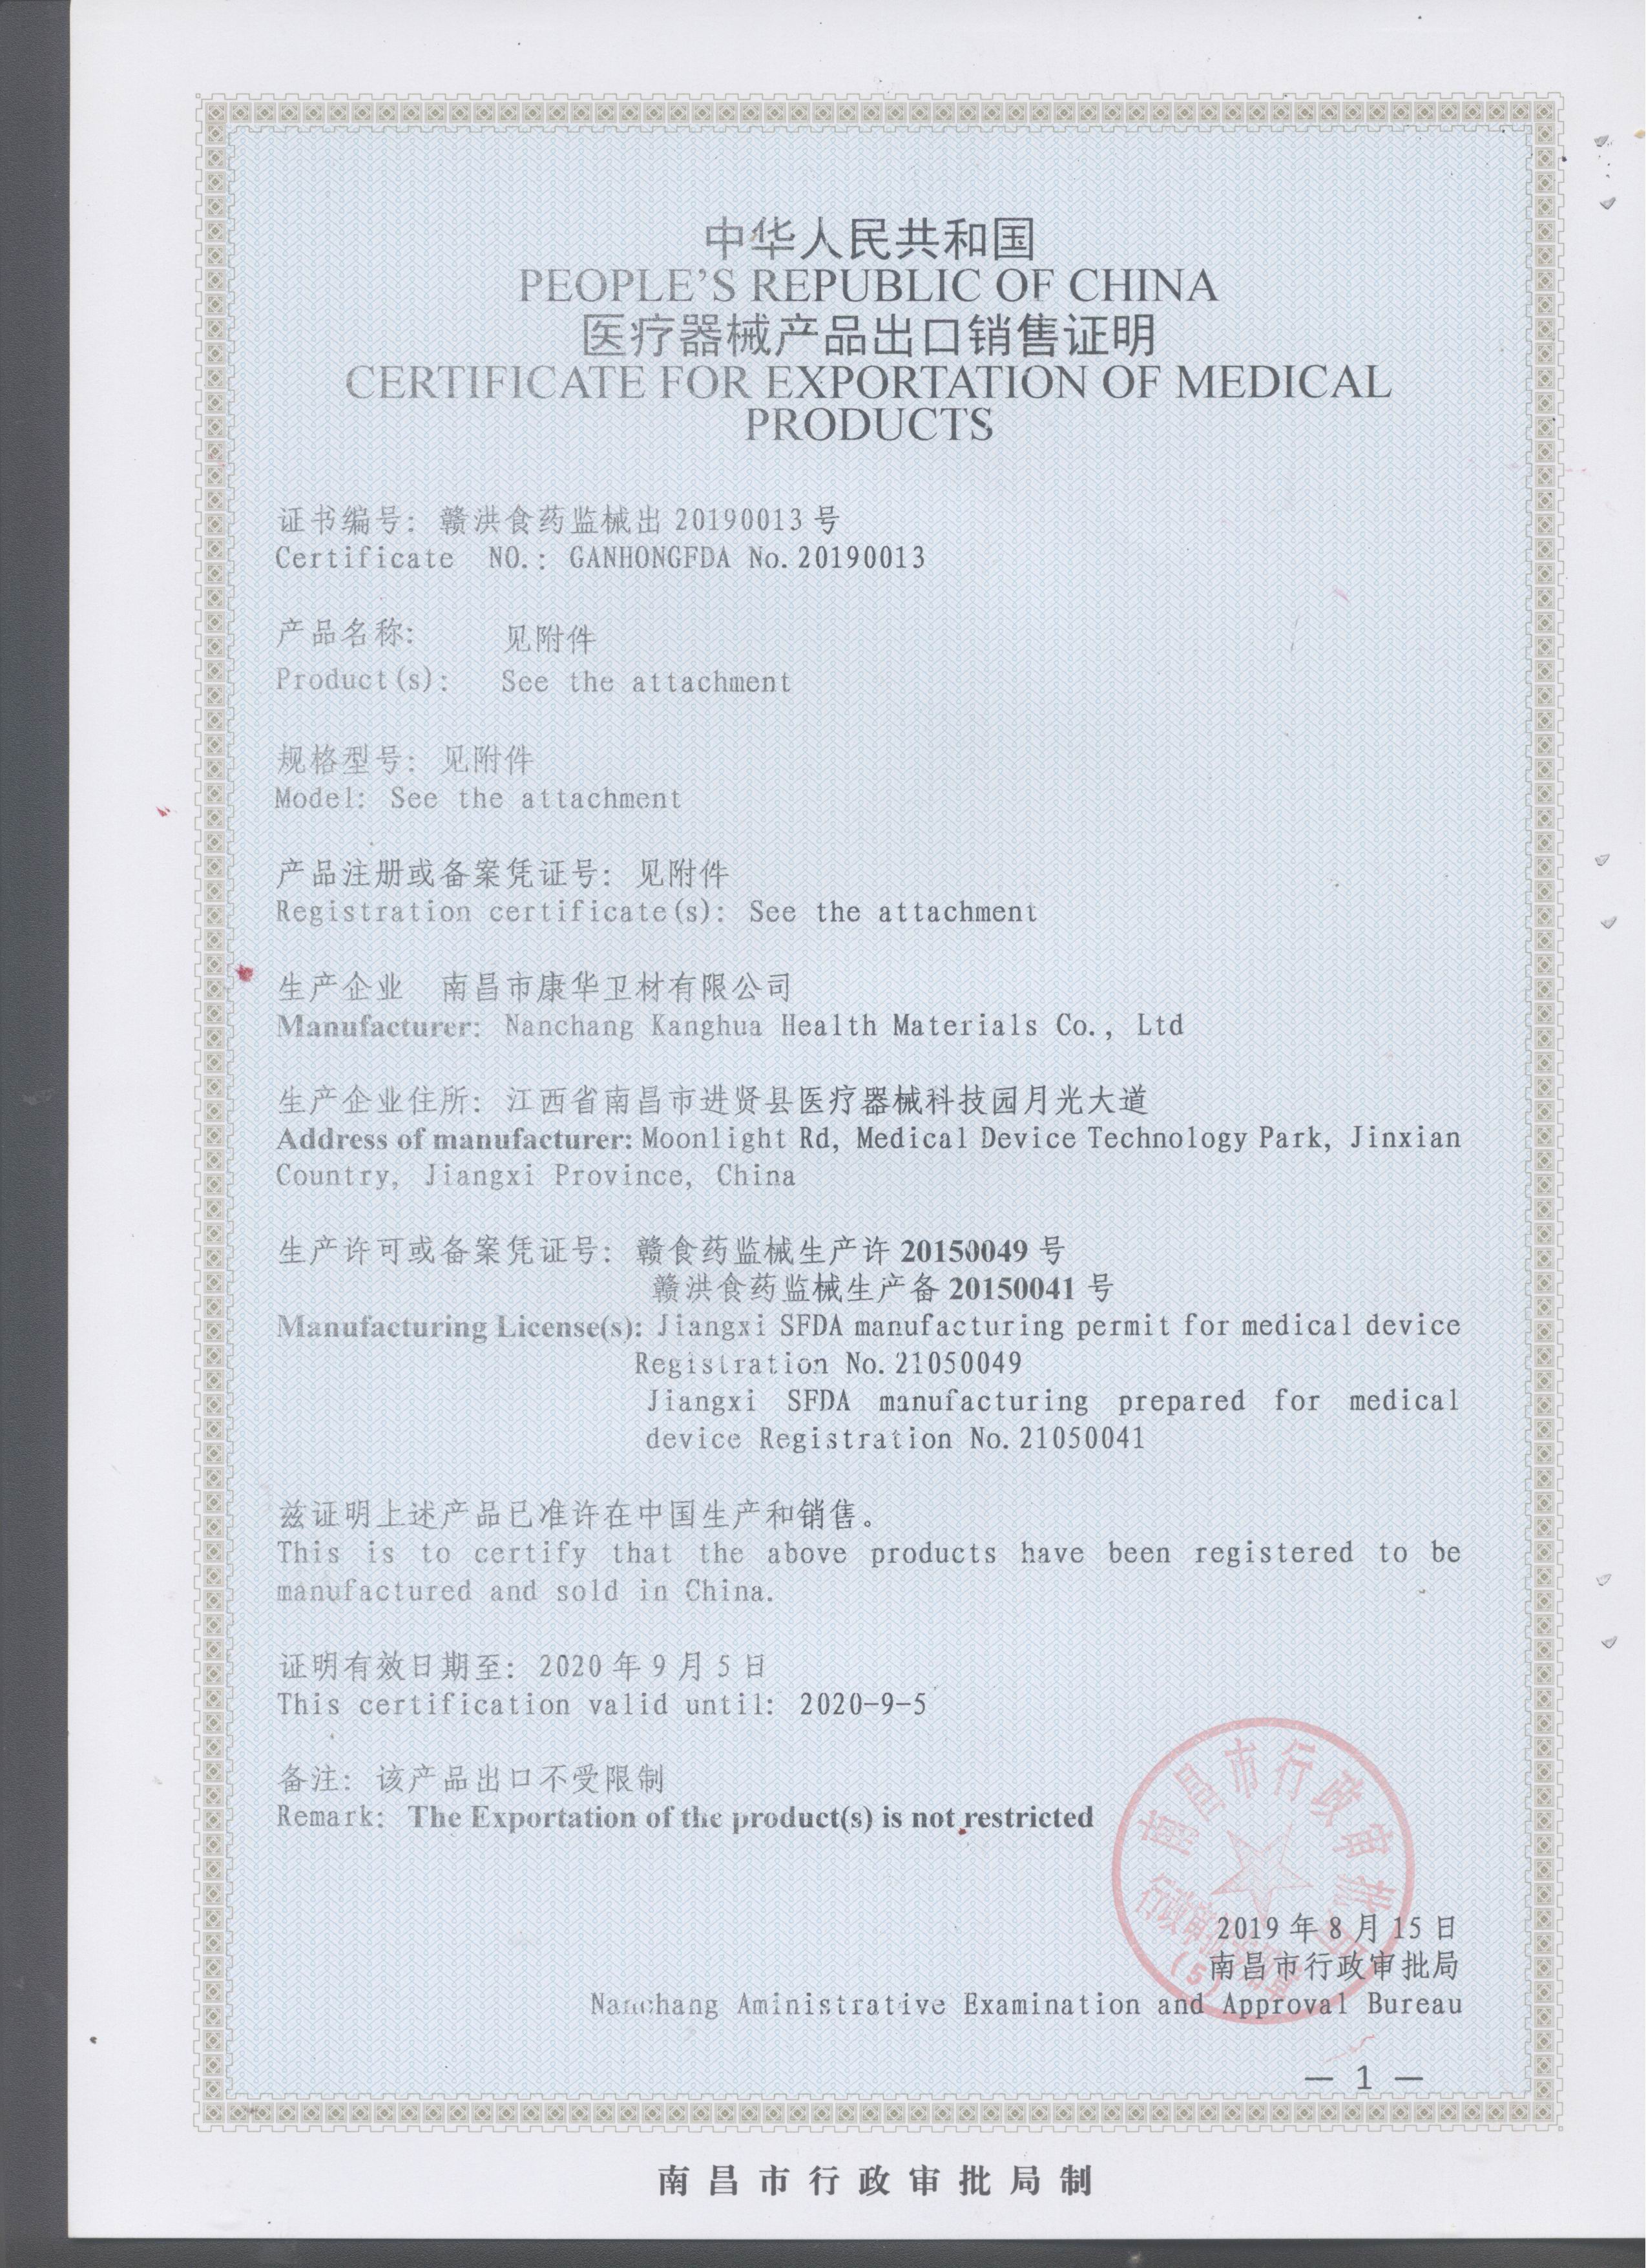 Kanghua Export Sales Certificate 190815 1